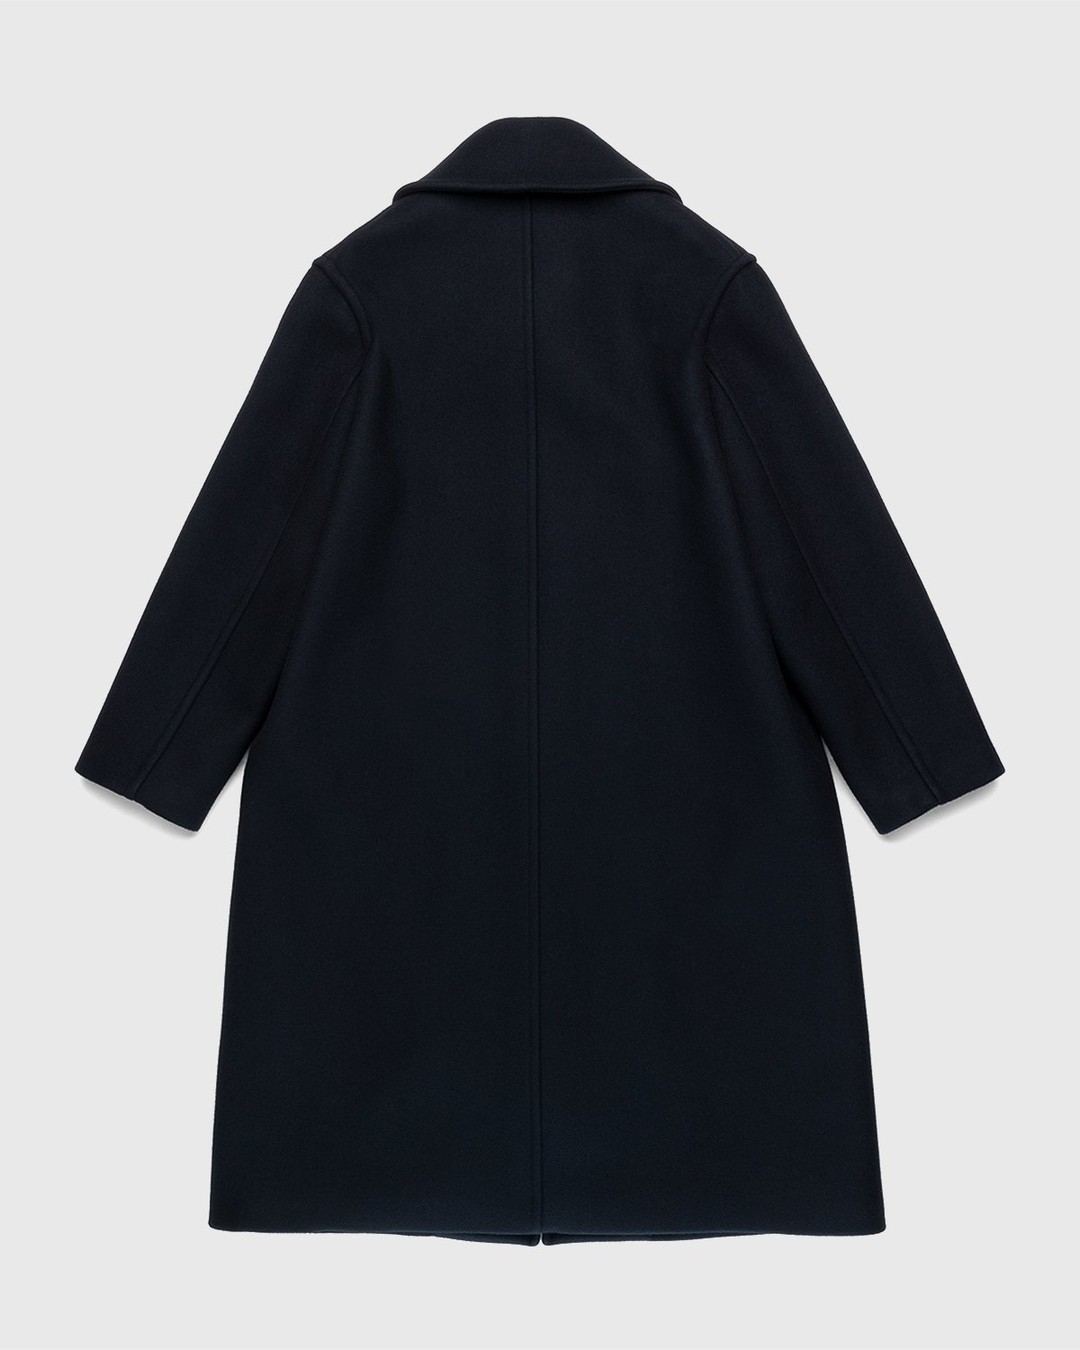 Jil Sander – Coat Black - Outerwear - Black - Image 2